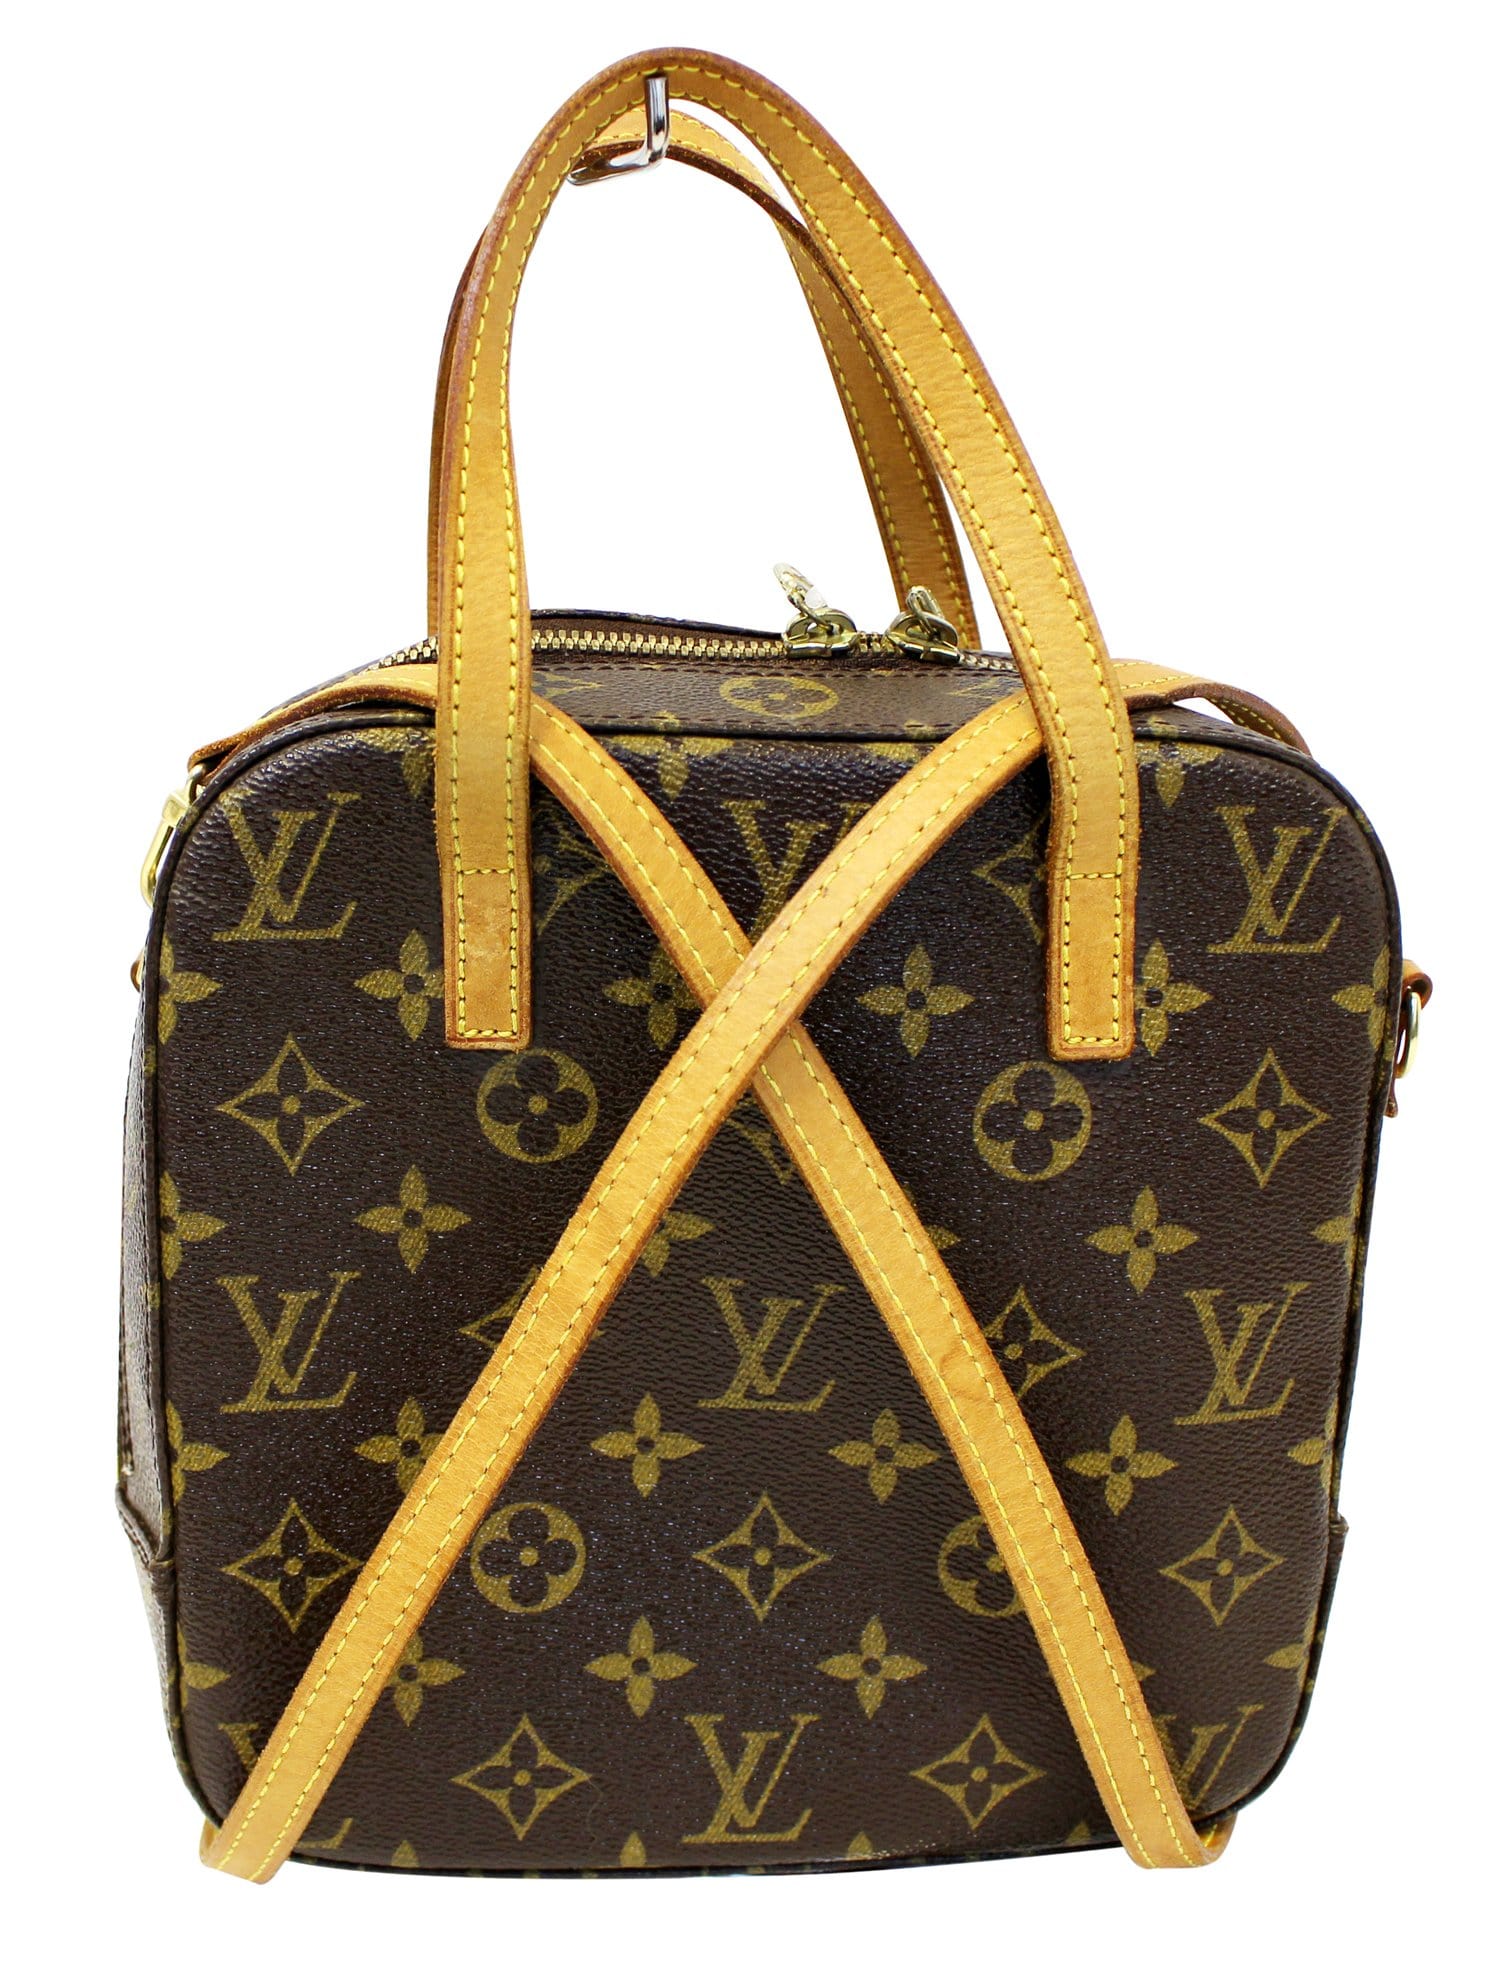 Hướng dẫn phân biệt túi Louis Vuitton Dauphine thật giả